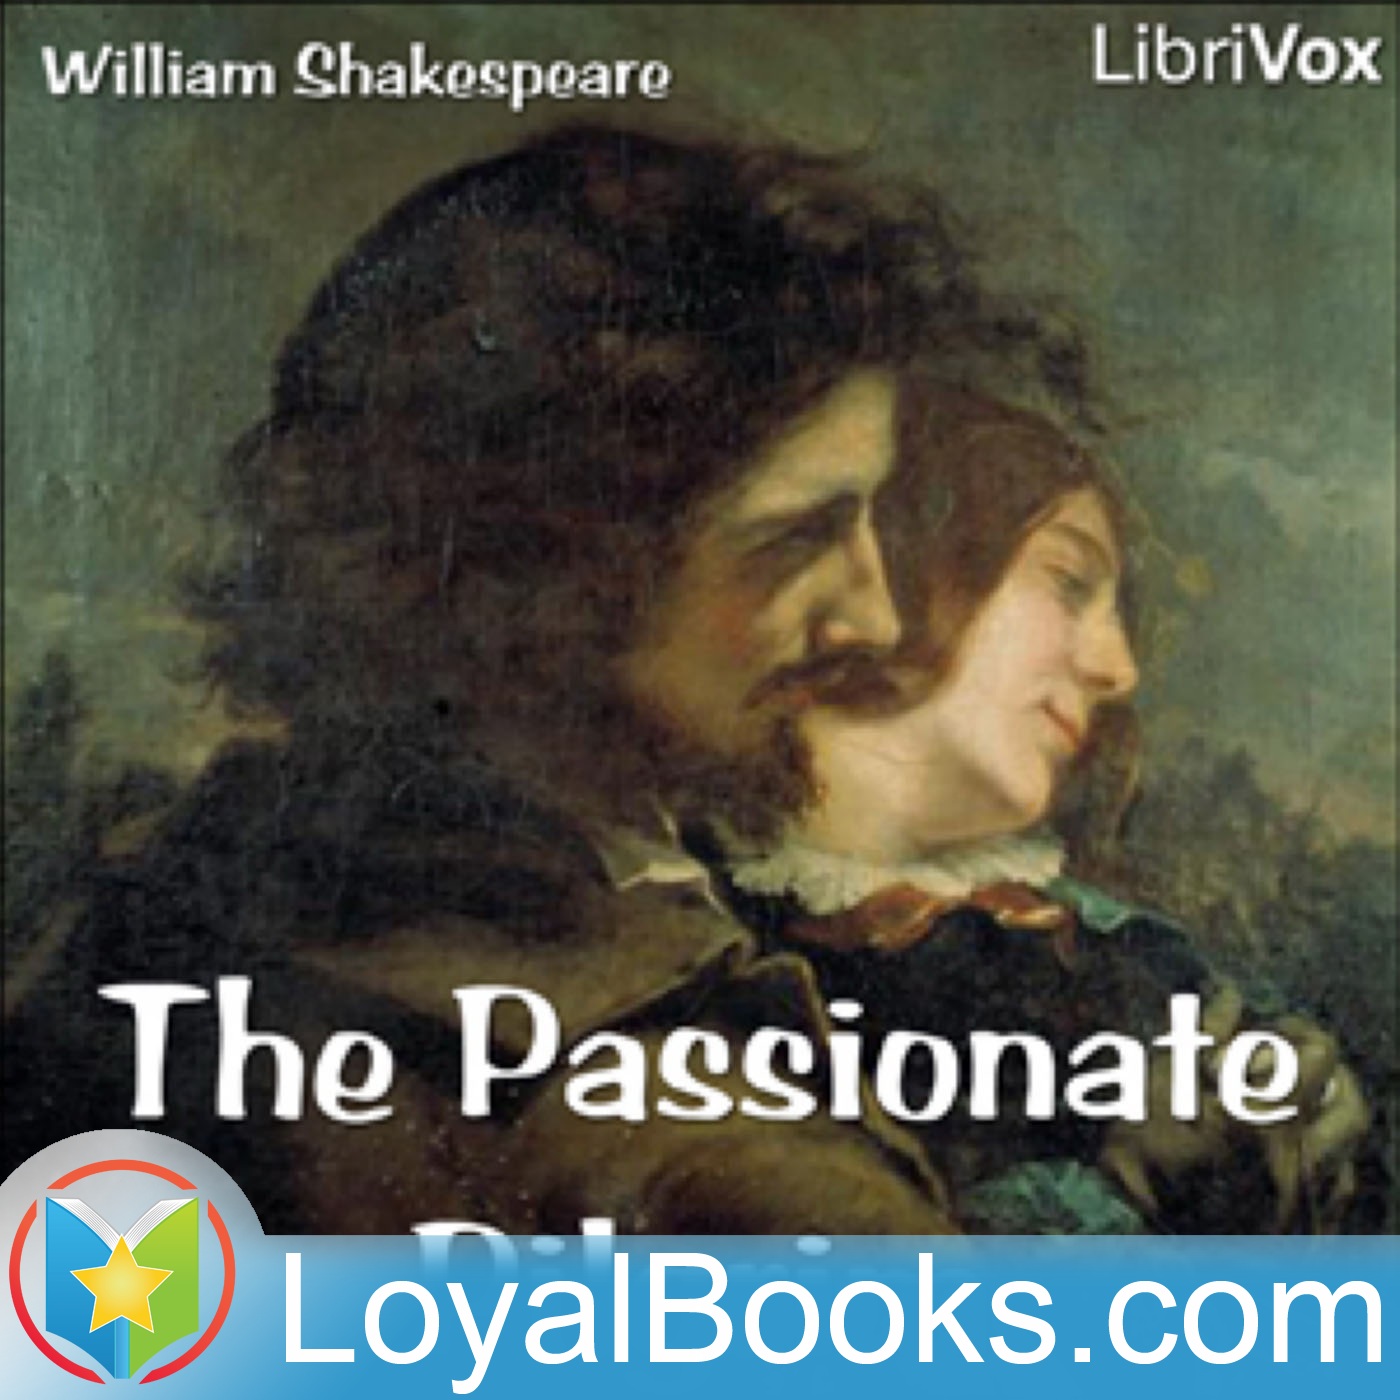 The Passionate Pilgrim by William Shakespeare